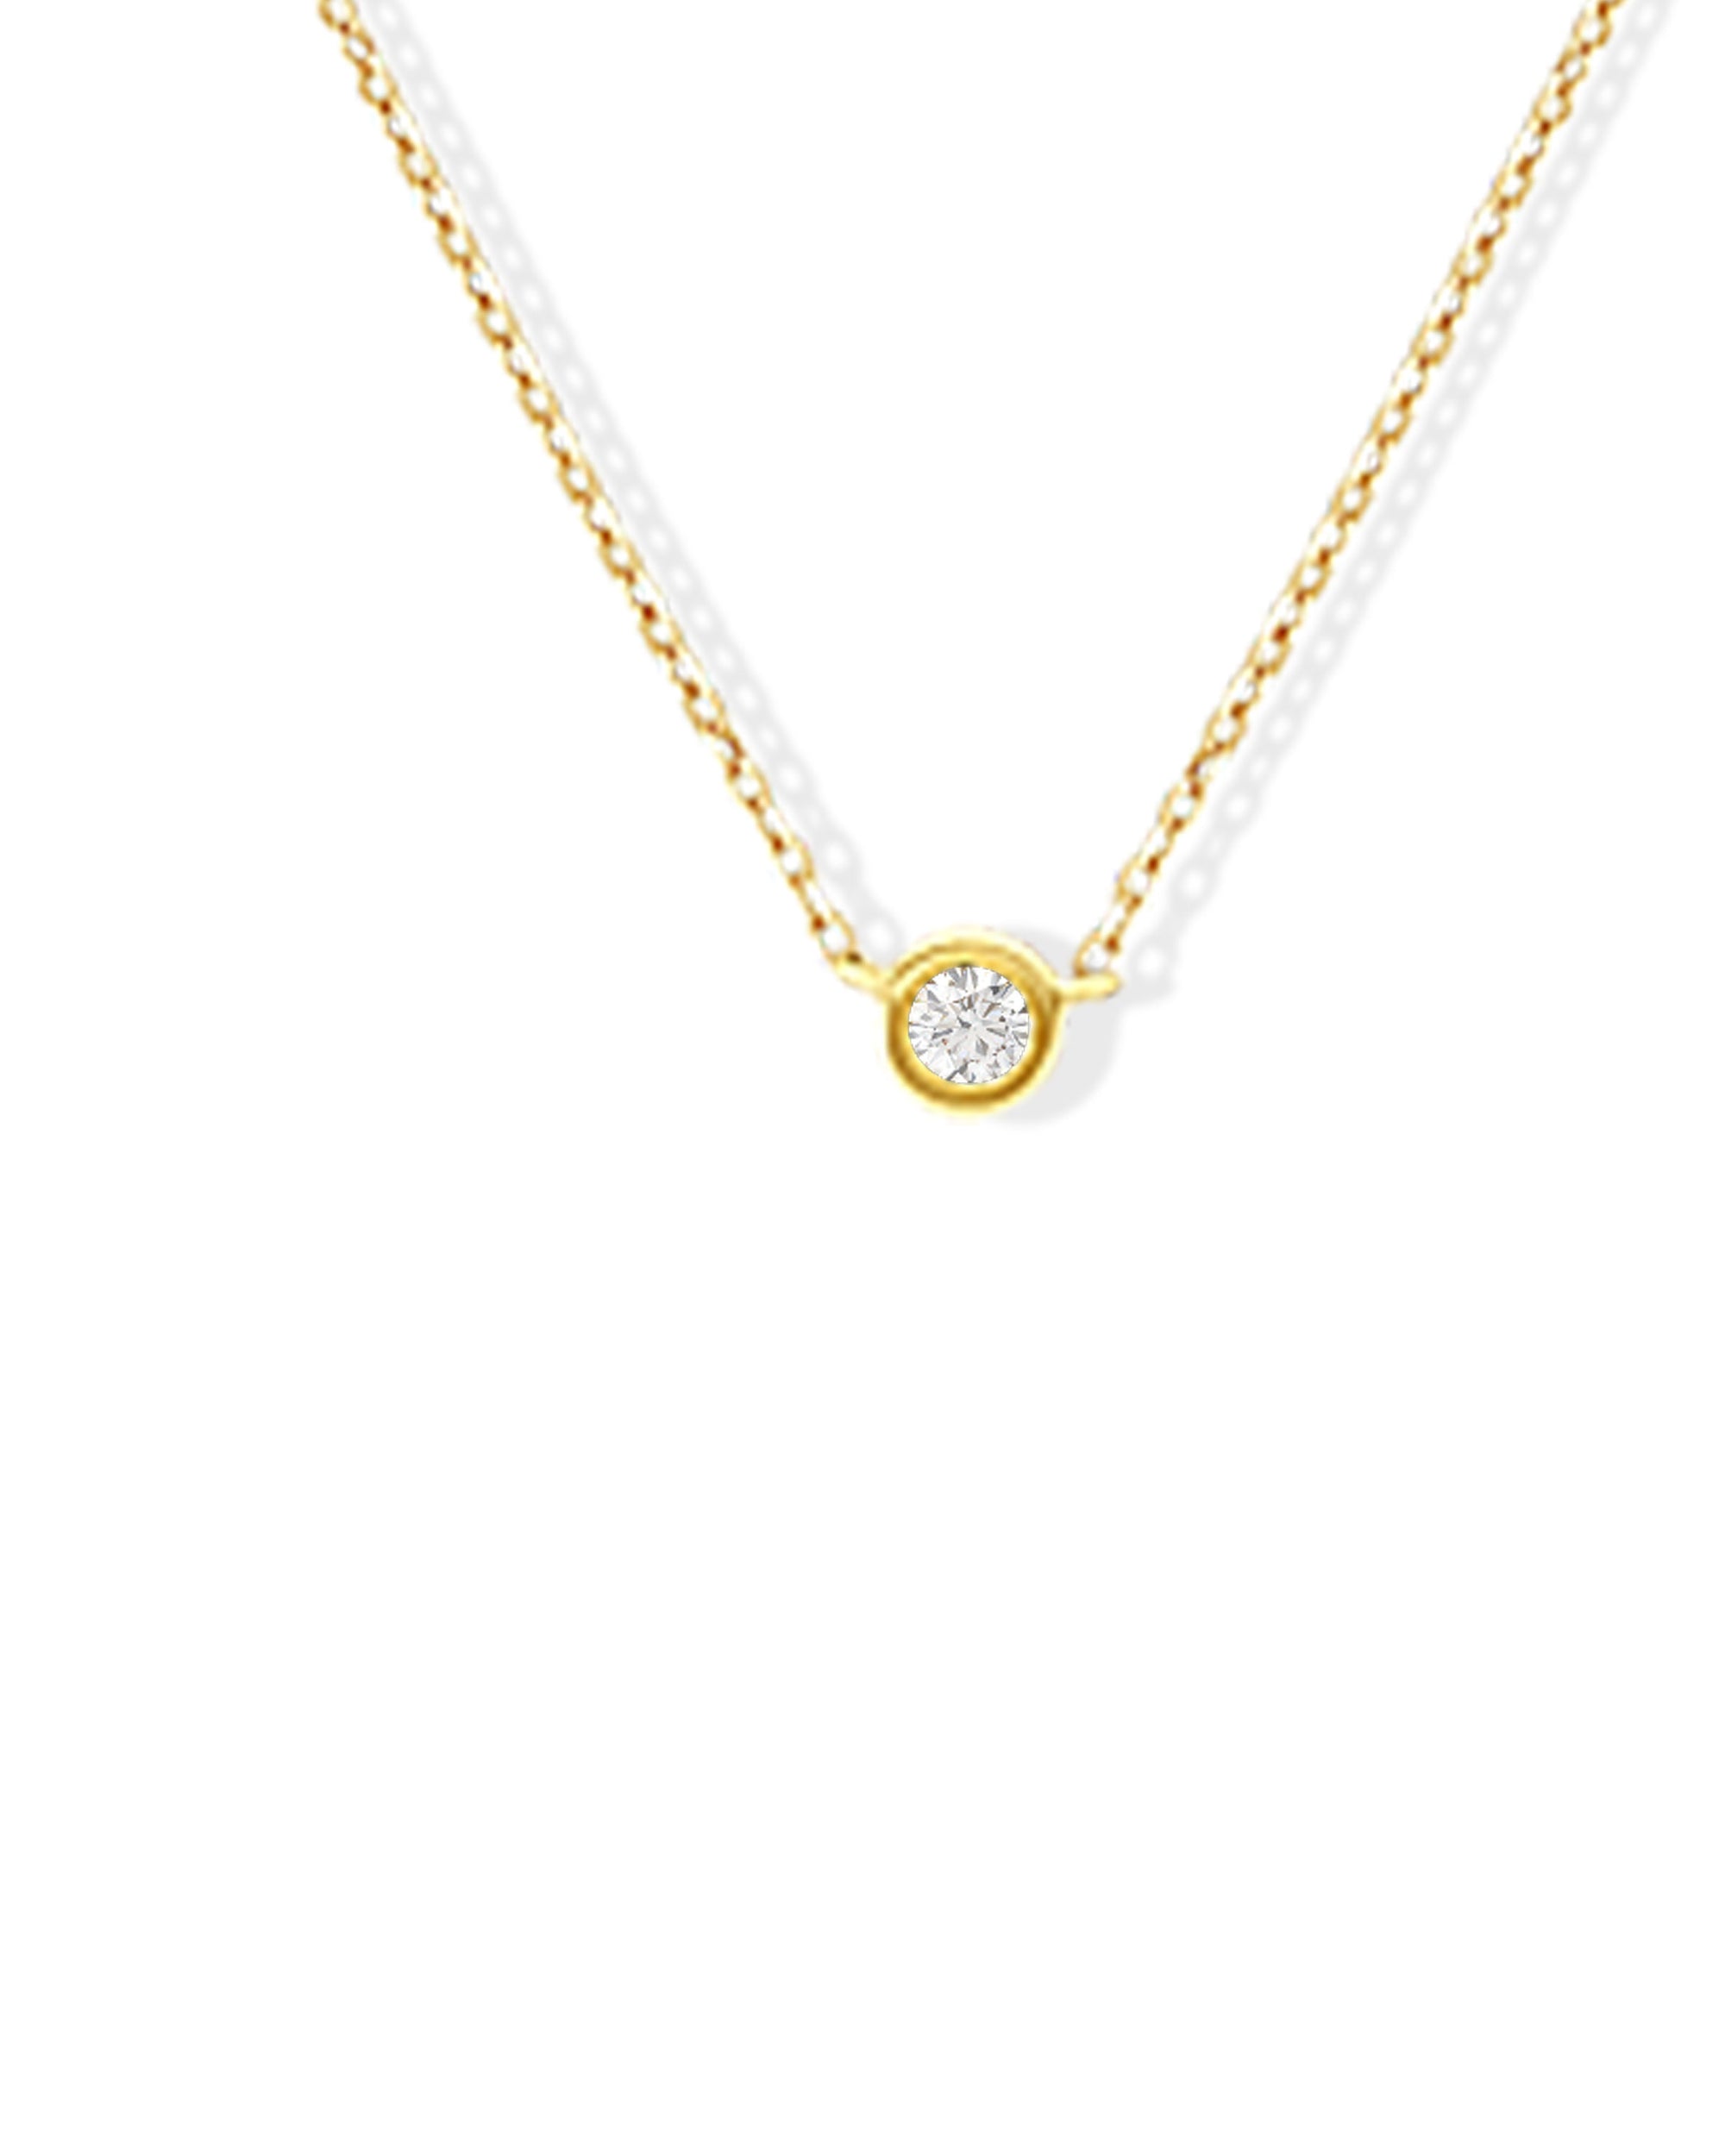 Soleil No. 1 Diamond Pendant Necklace